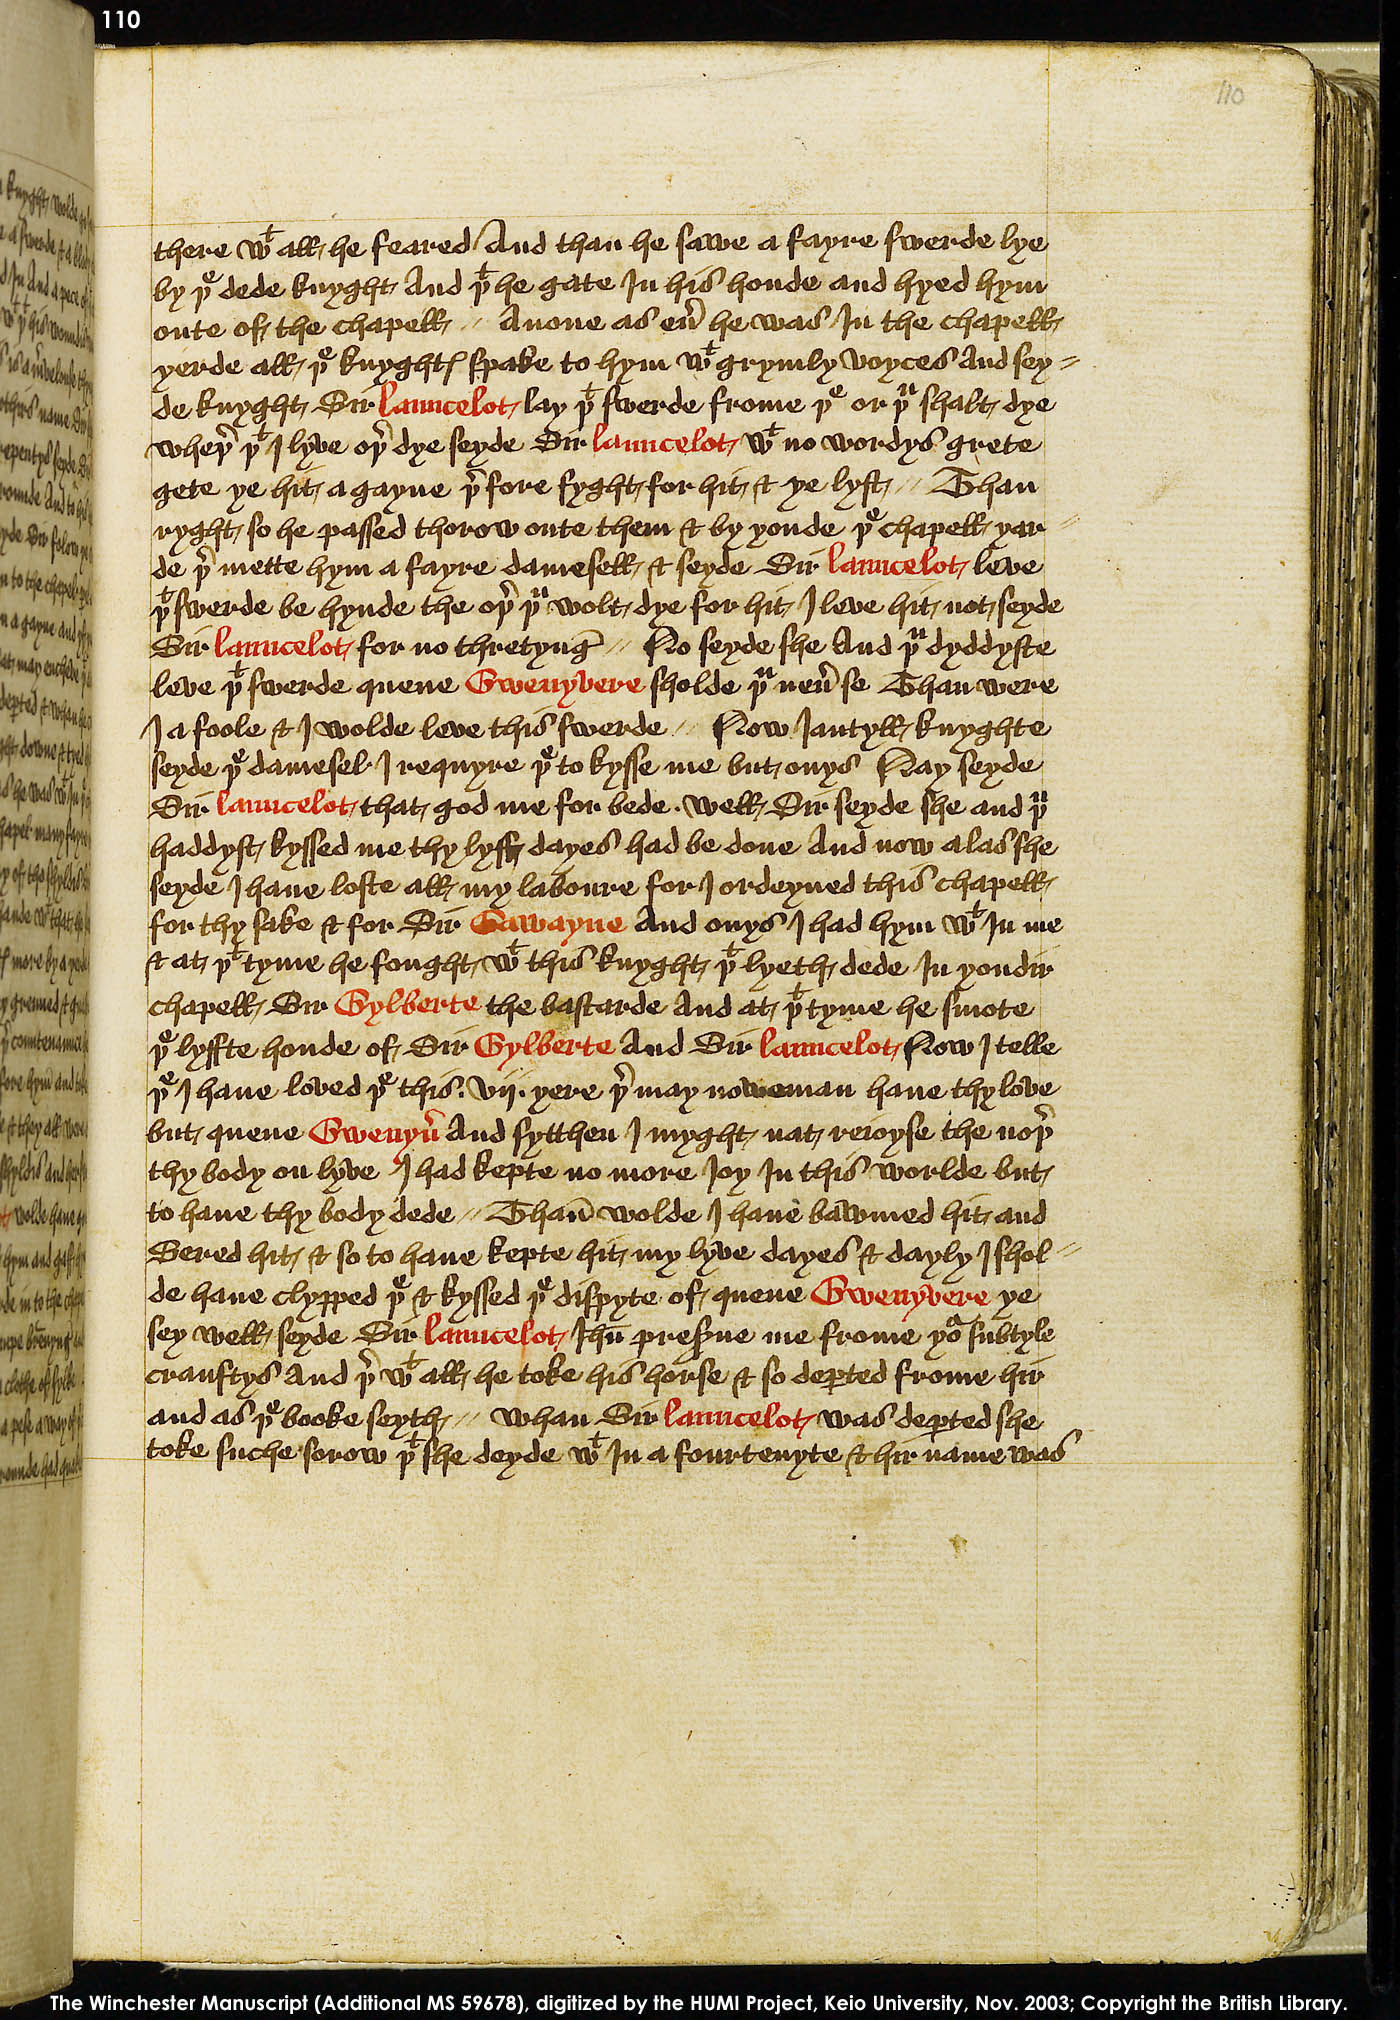 Folio 110r